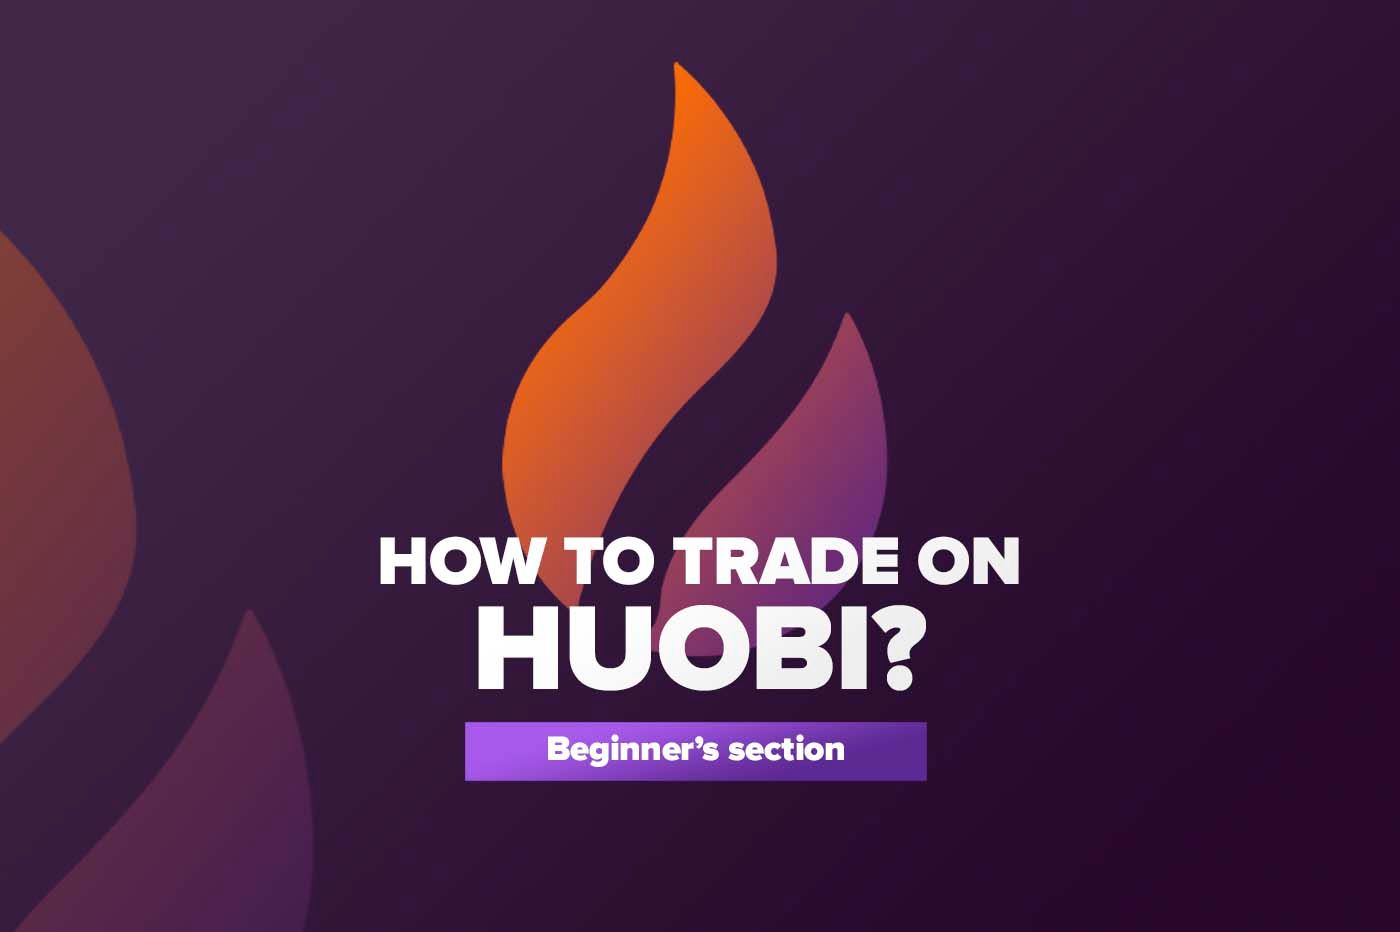 Article Как торговать на Huobi?